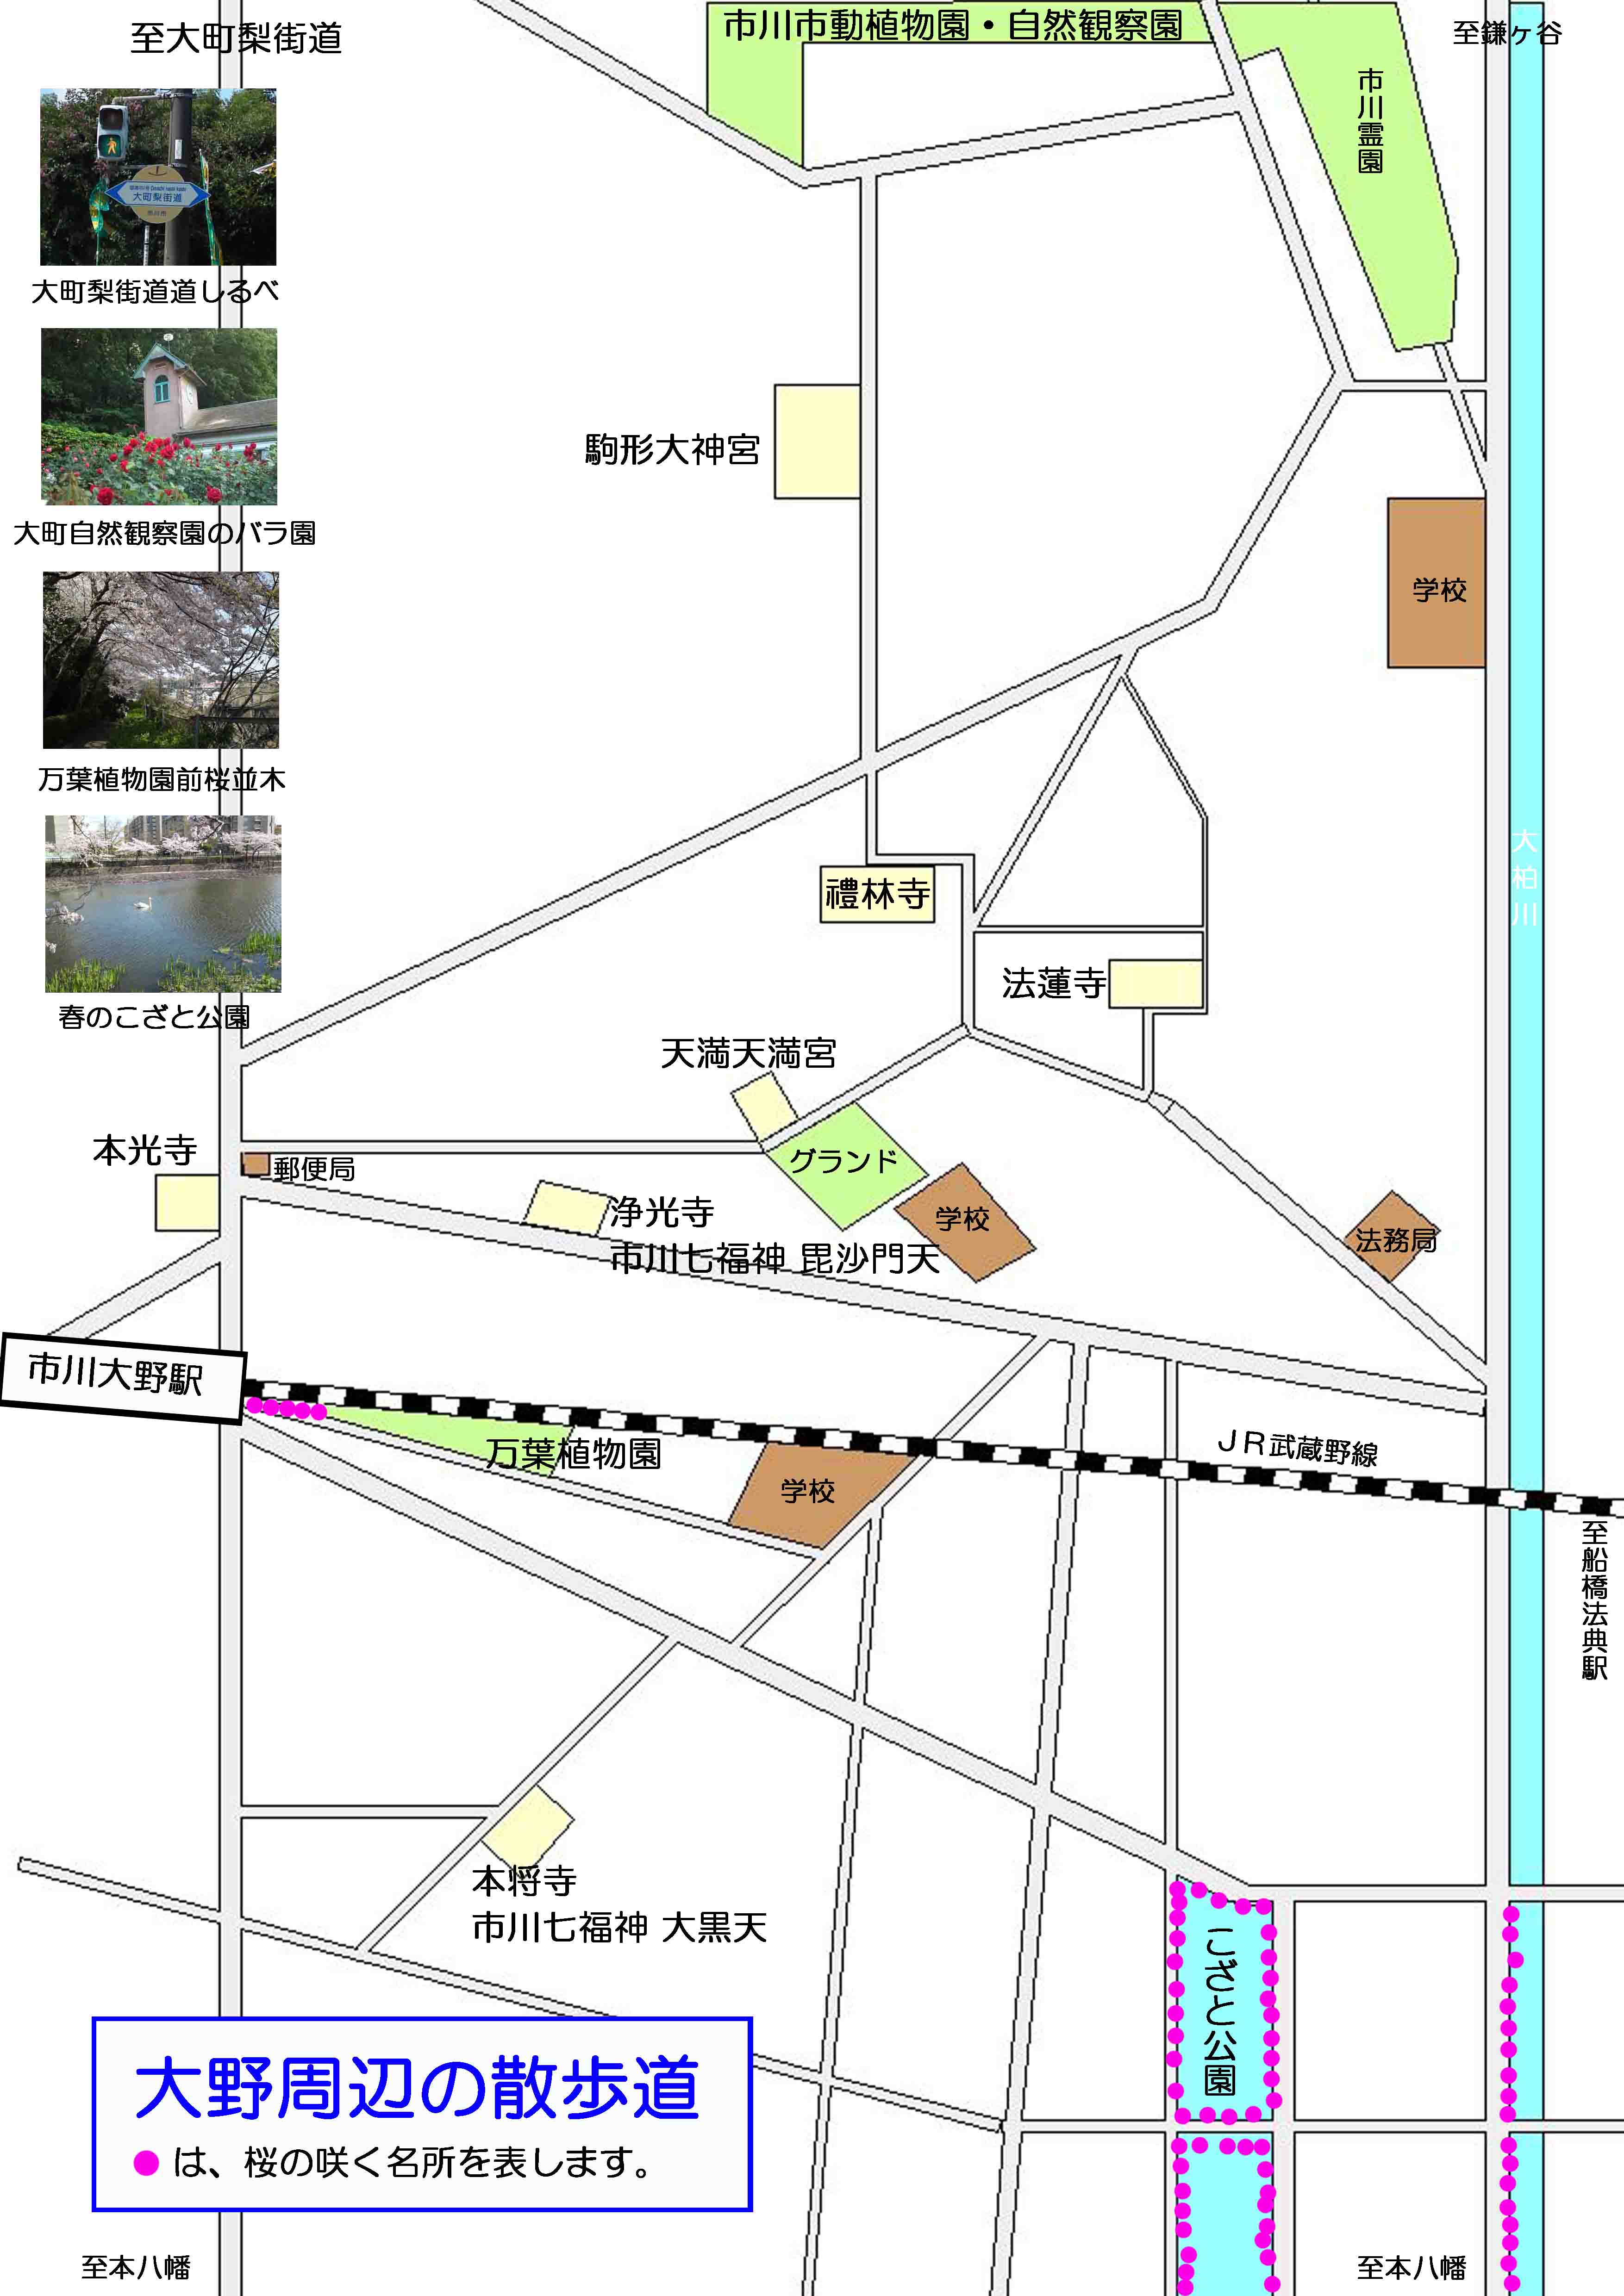 本將寺と浄光寺周辺の案内図